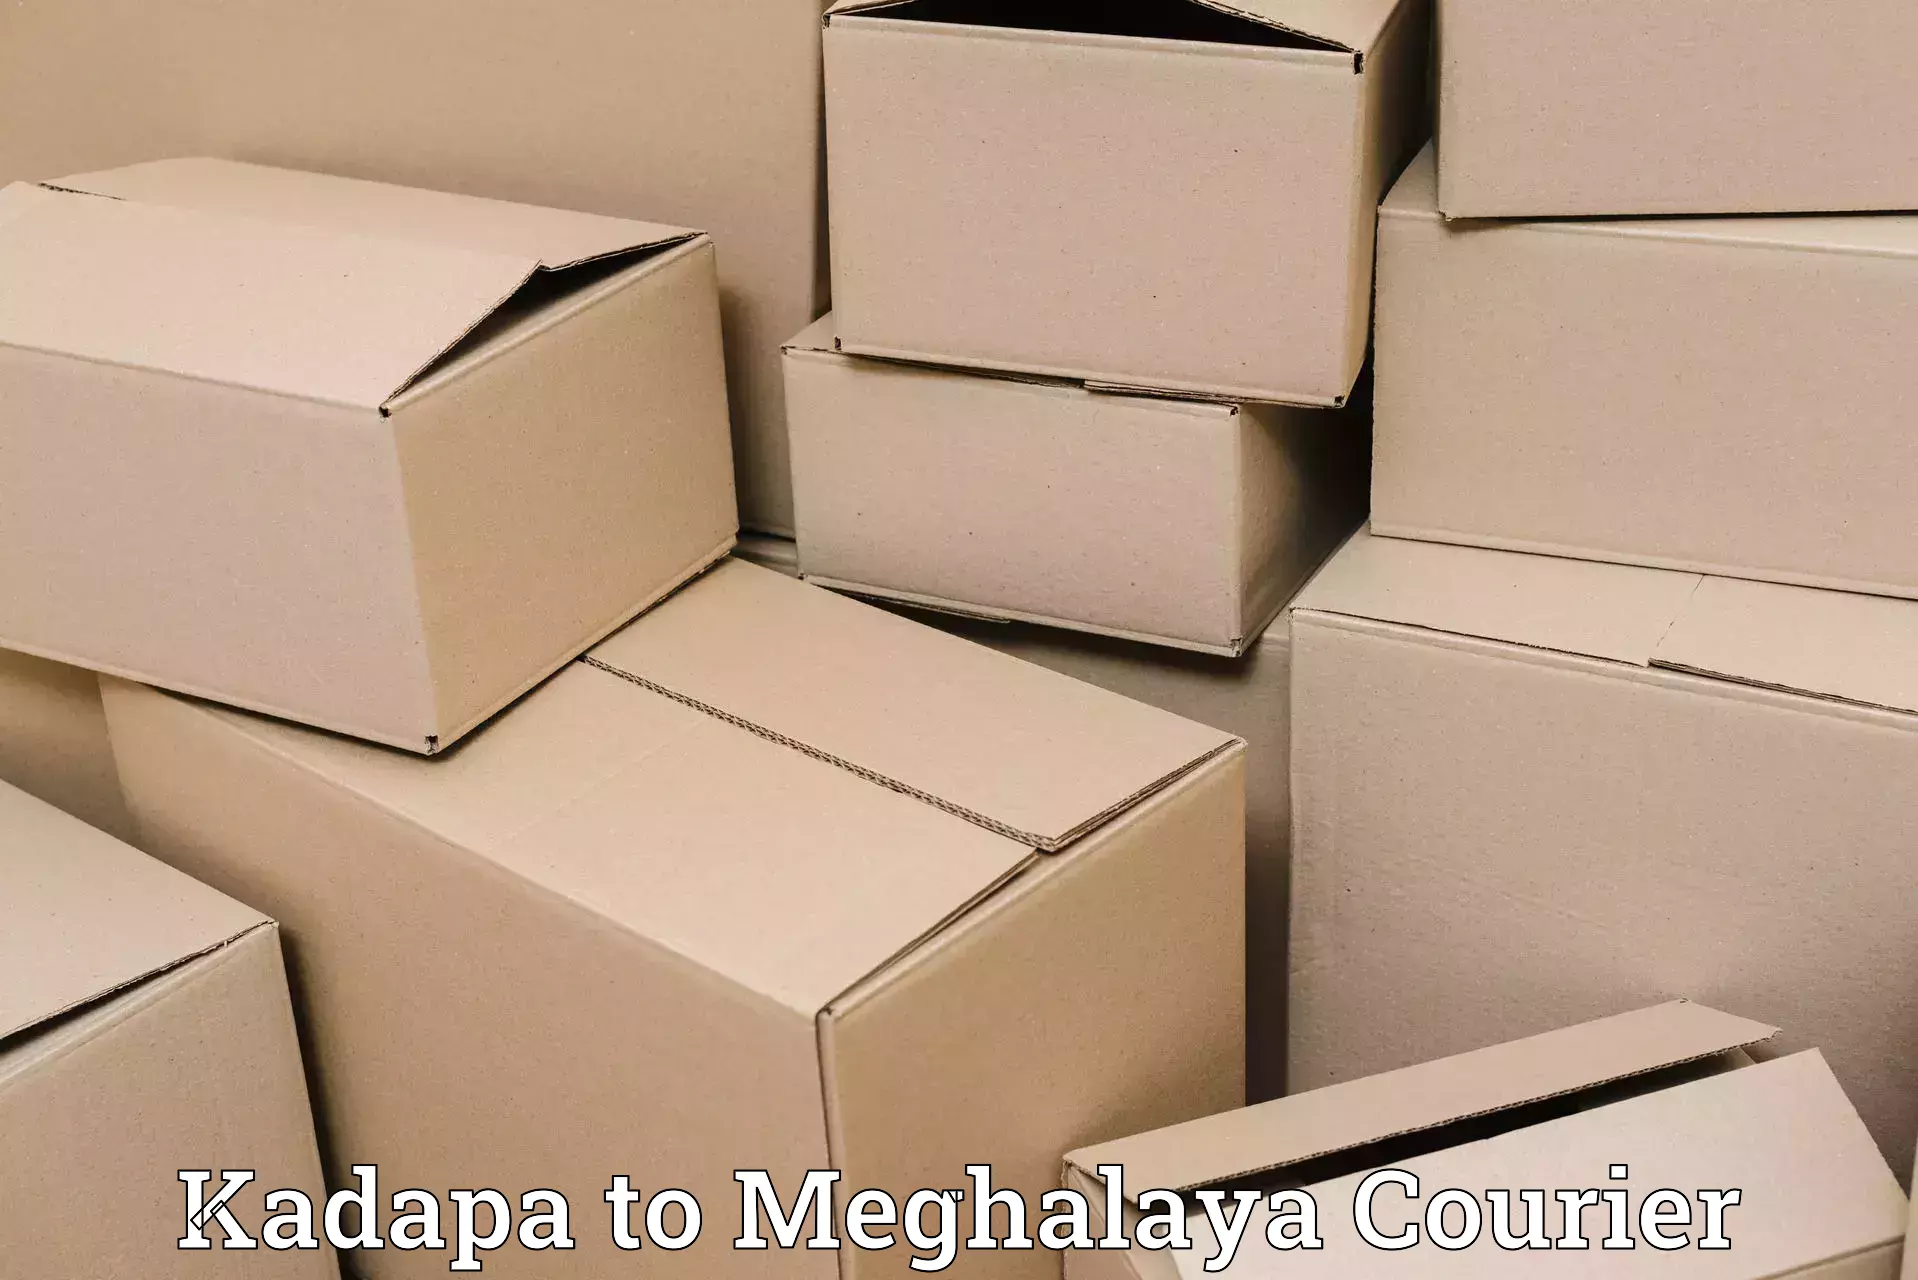 Automated shipping processes Kadapa to Cherrapunji